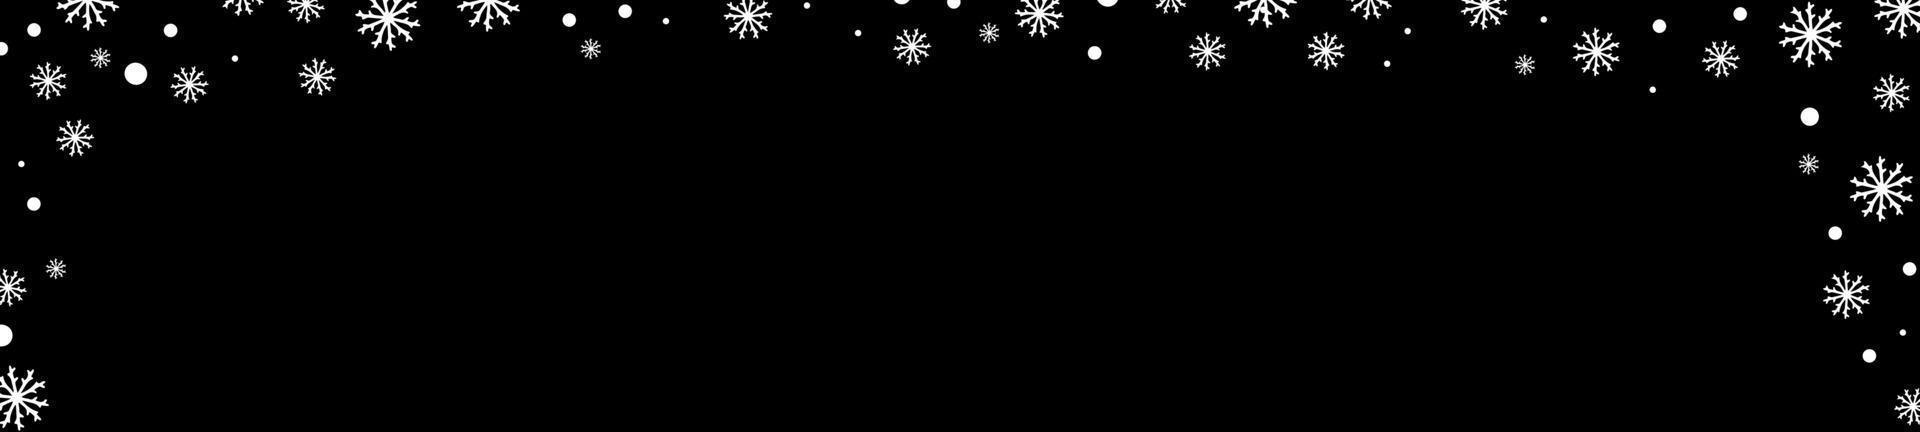 schwarze Winterhintergrundfahne mit weißen Schneeflocken vektor